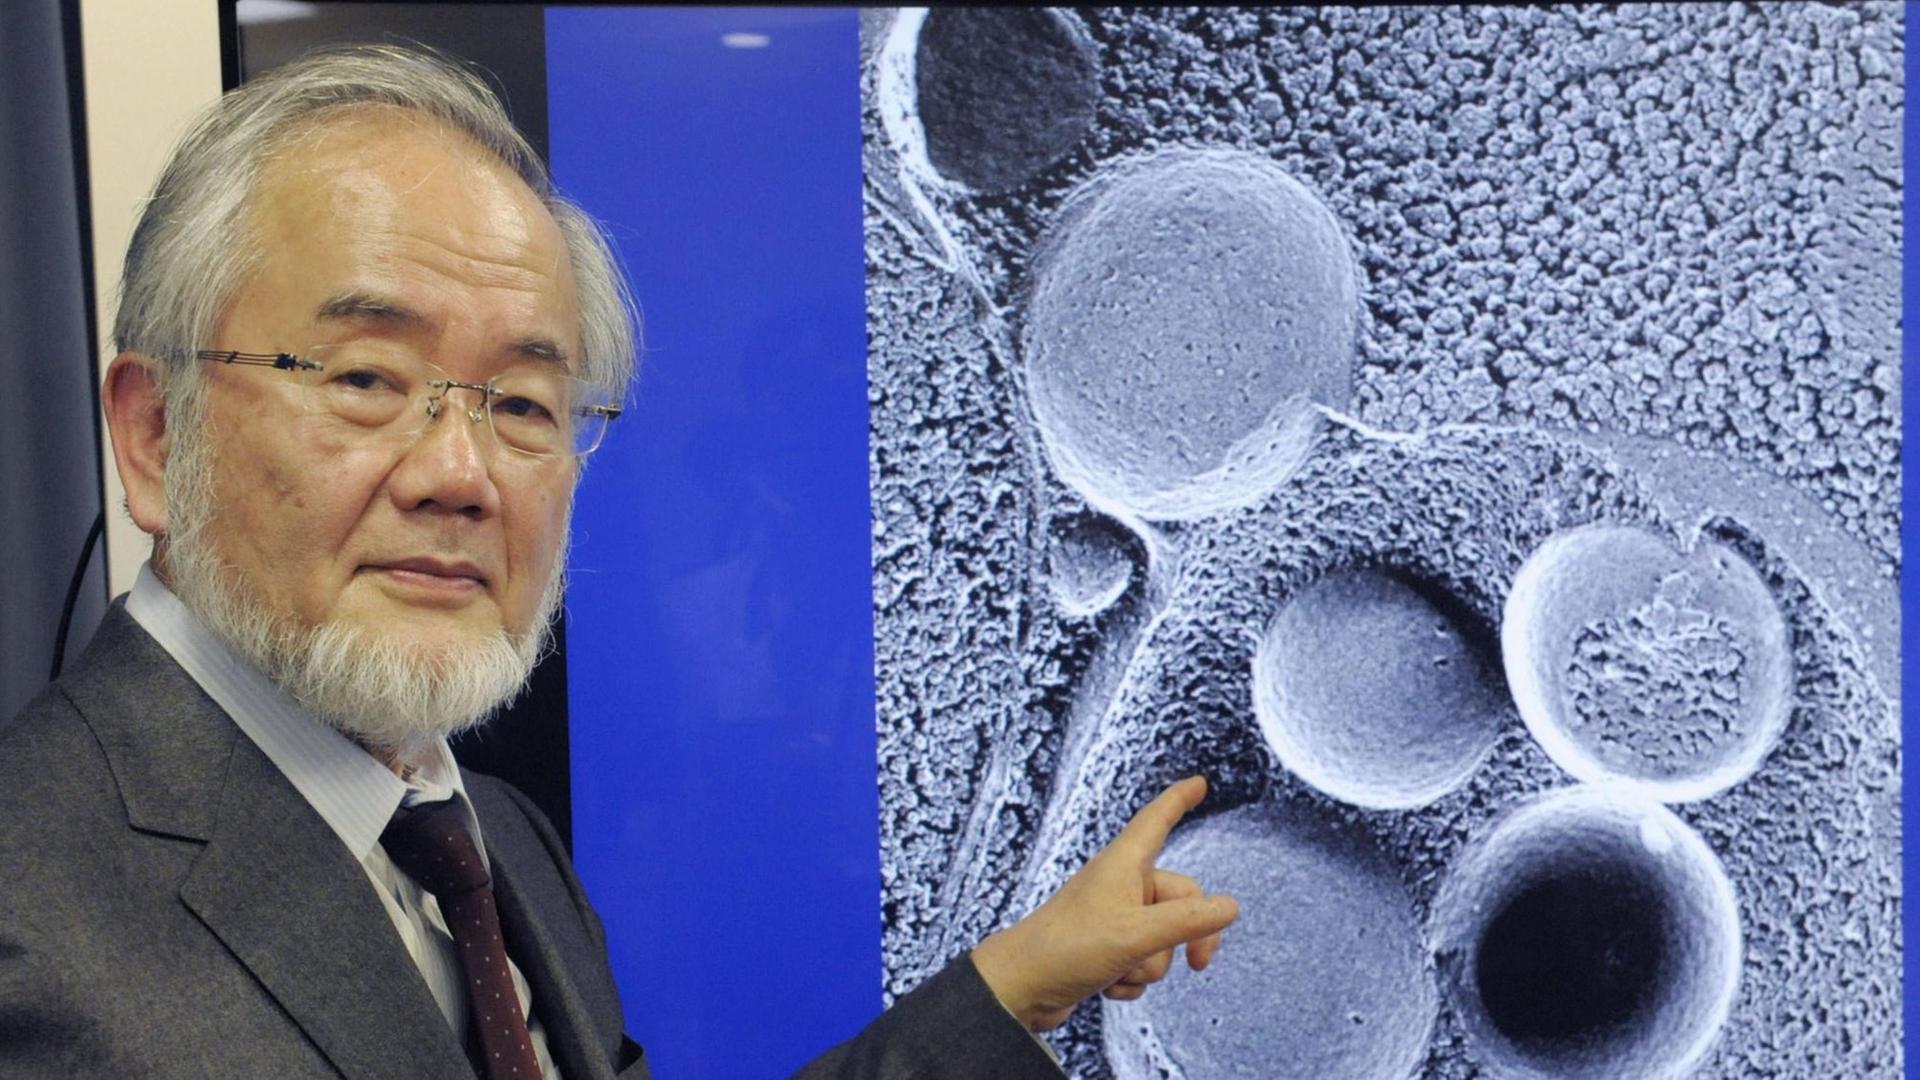 Yoshinori Osumi bekam 2016 den Nobelpreis für Medizin/Physiologie für seine Beschreibung der Funktionsweise der Autophagie